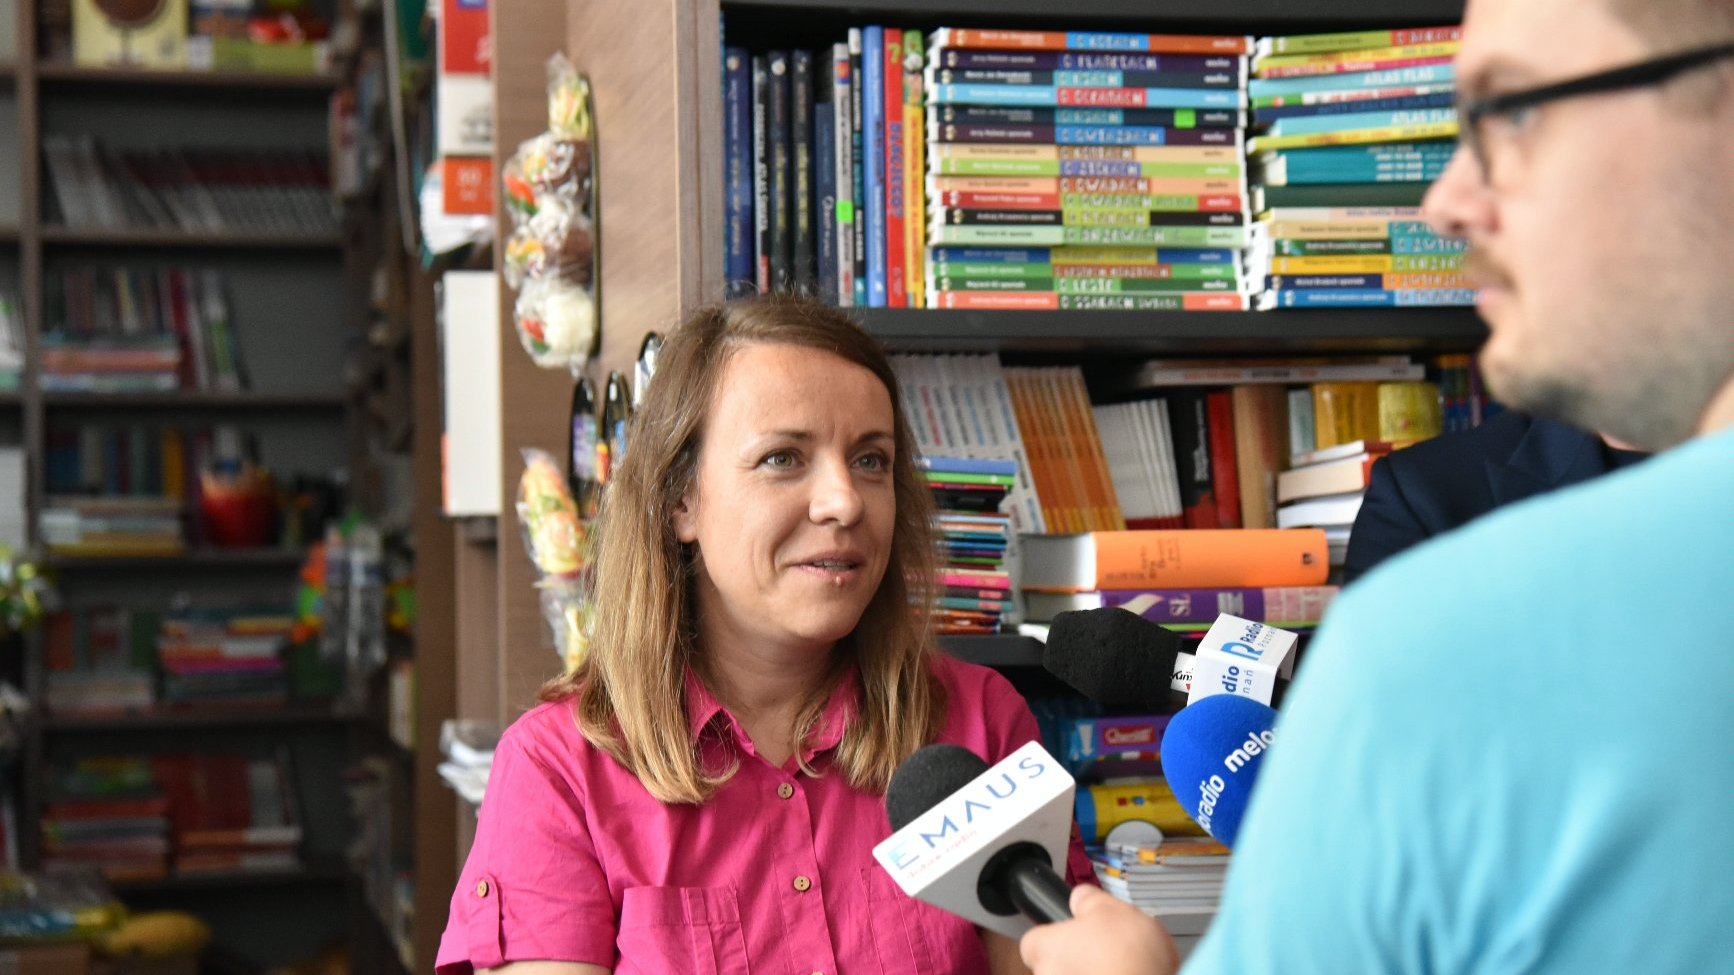 Zdjęcie przedstawia kobietę mówiącą do mikrofonu. Z tyłu widać półkę z książkami.